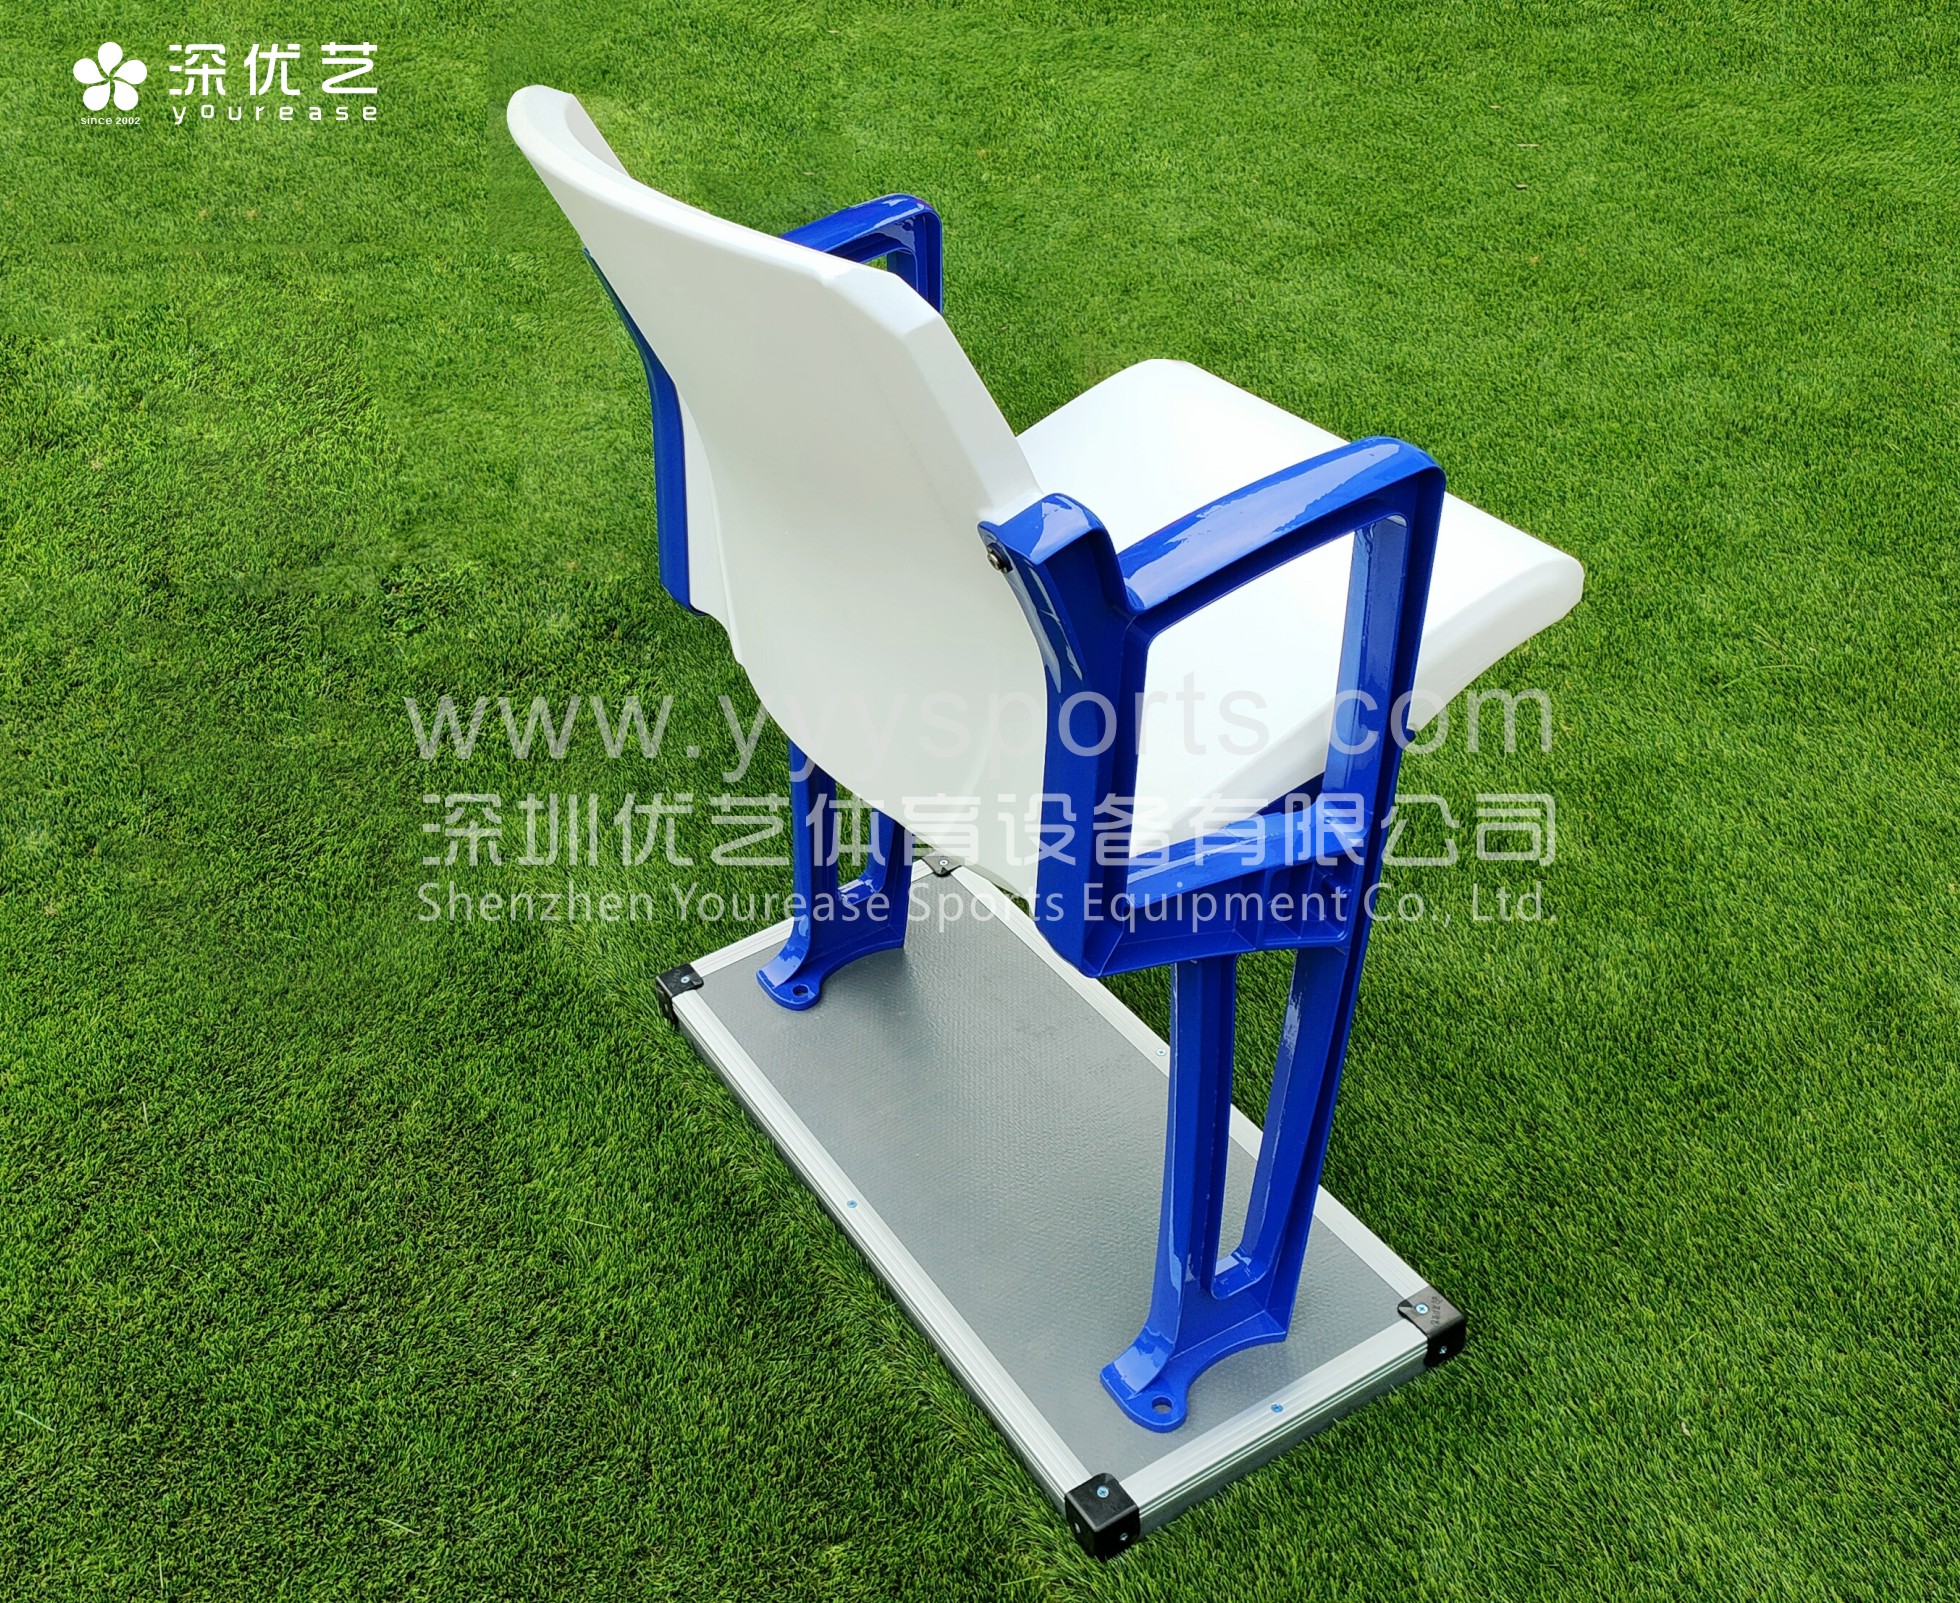 Yourease Football Plastic Stadium Chair Prezzo Immagine di presentazione